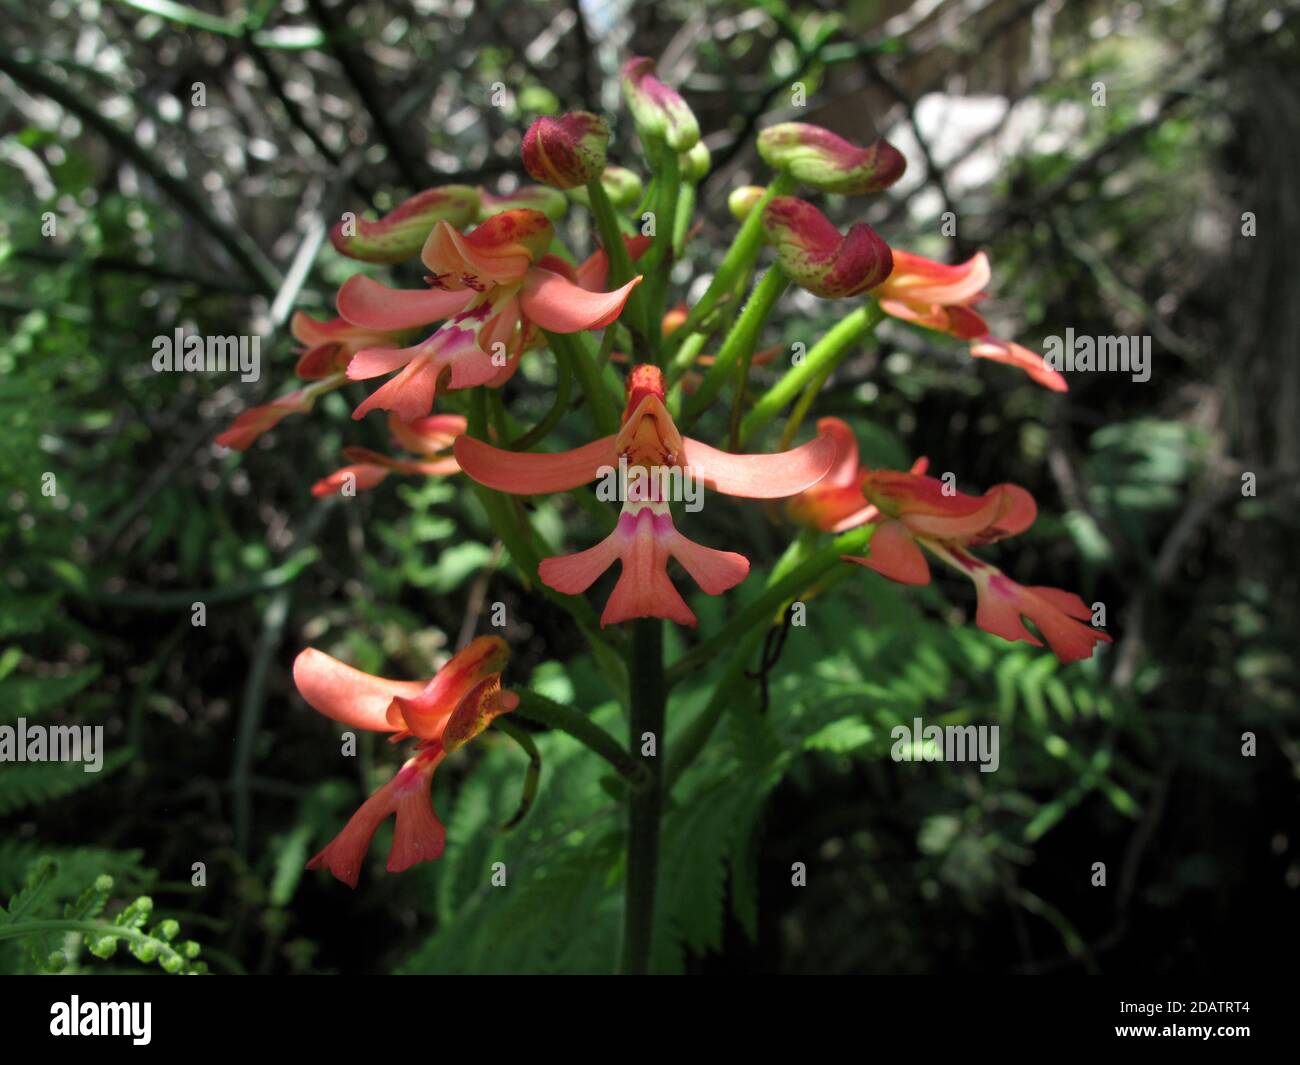 Orquídea (Cynorkis gibbosa) Creciendo en una reserva comunitaria de conservación en Madagascar Foto de stock